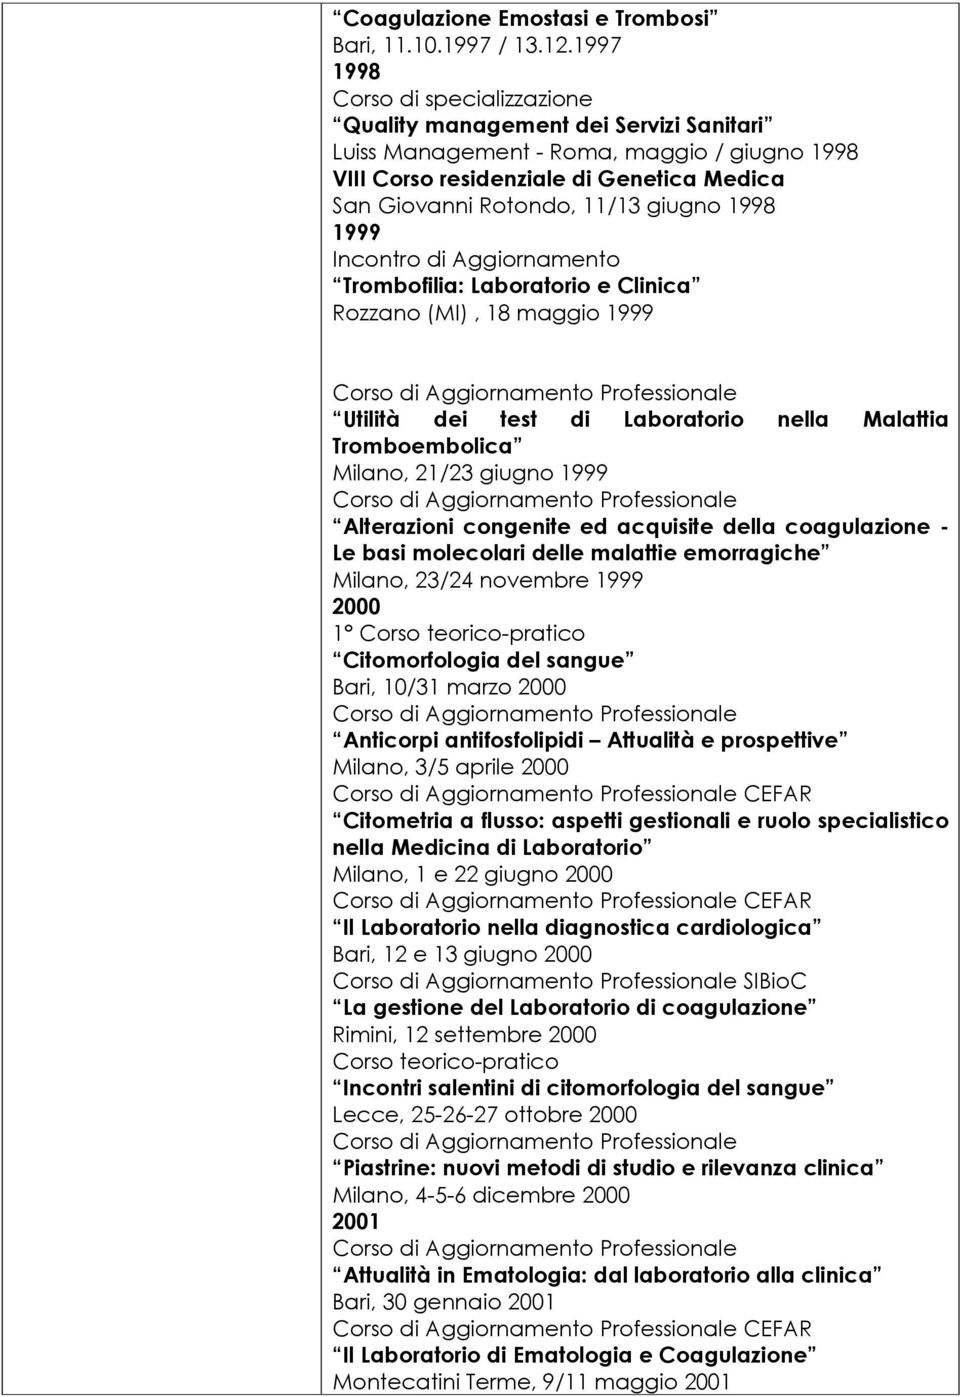 1998 1999 Incontro di Aggiornamento Trombofilia: Laboratorio e Clinica Rozzano (MI), 18 maggio 1999 Utilità dei test di Laboratorio nella Malattia Tromboembolica Milano, 21/23 giugno 1999 Alterazioni